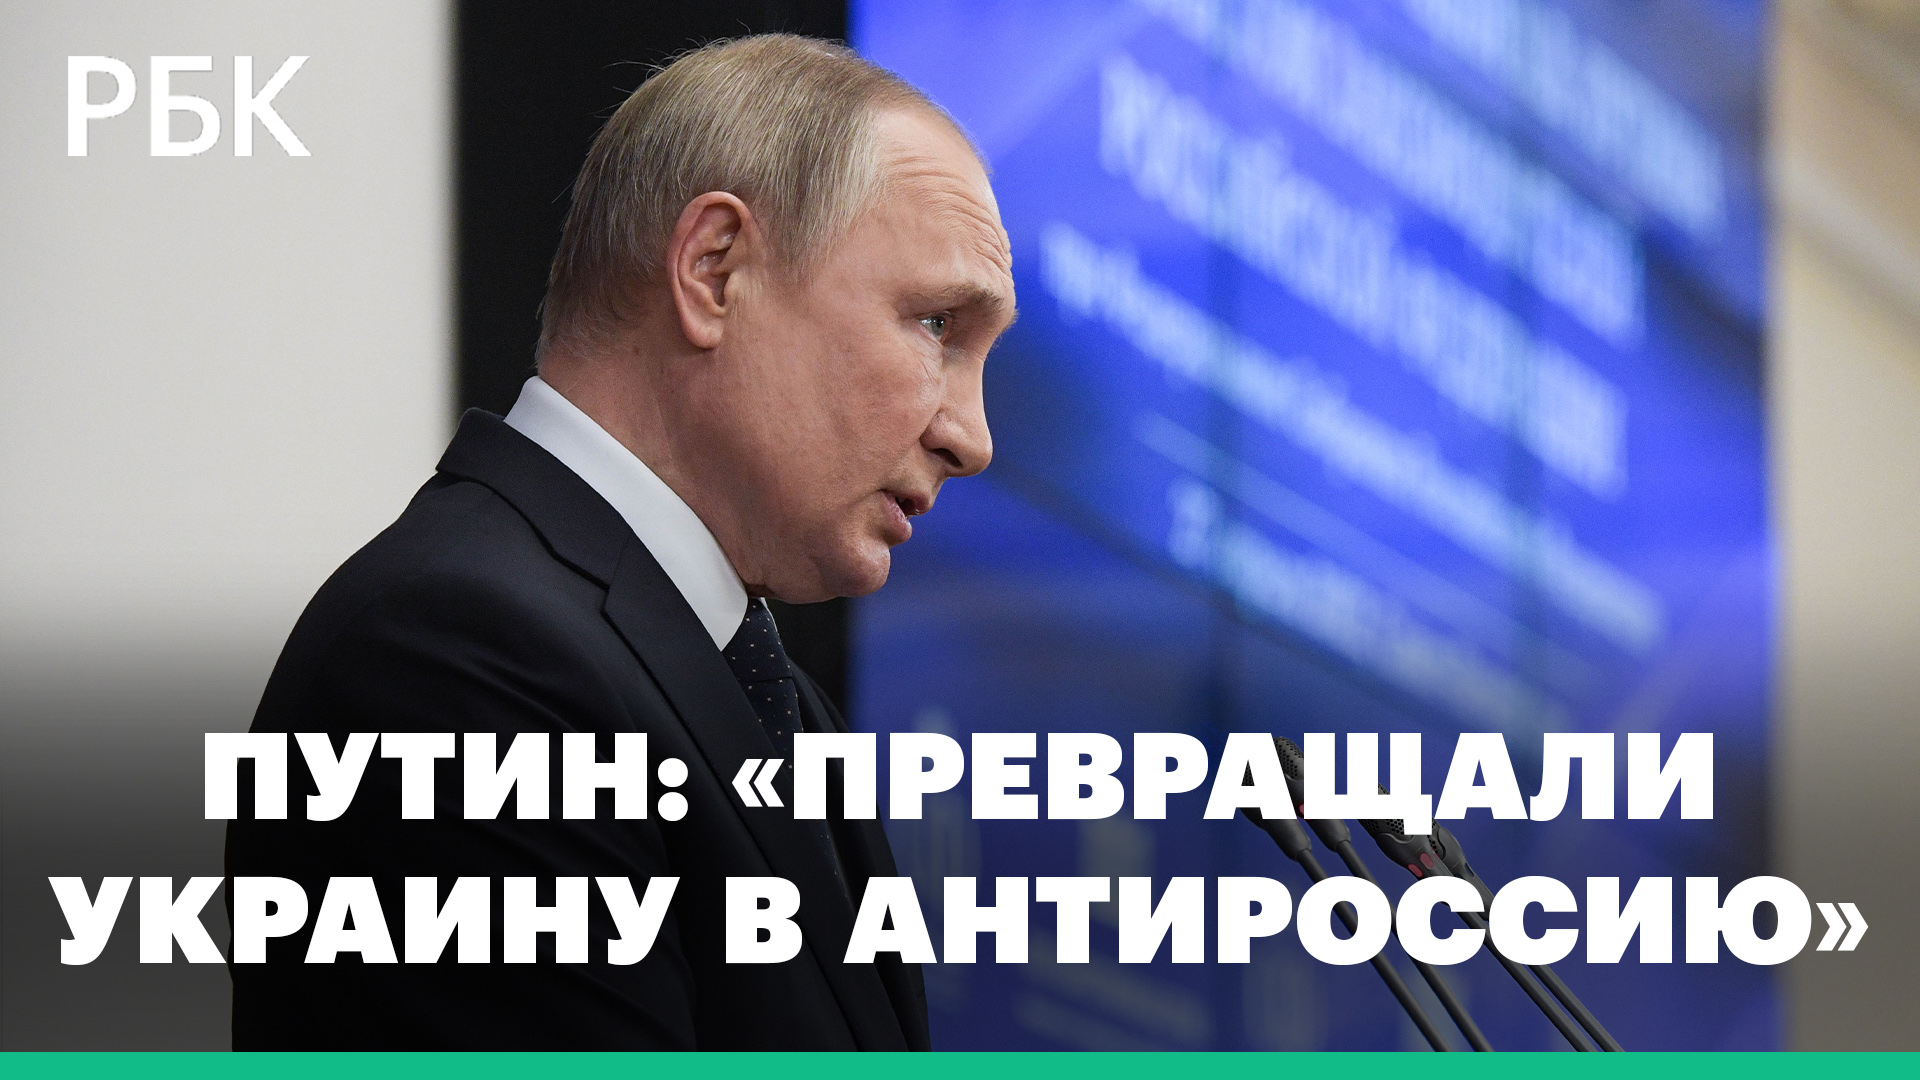 О «молниеносном ответе», топорных санкциях и «Антироссии». Путин выступил в Петербурге